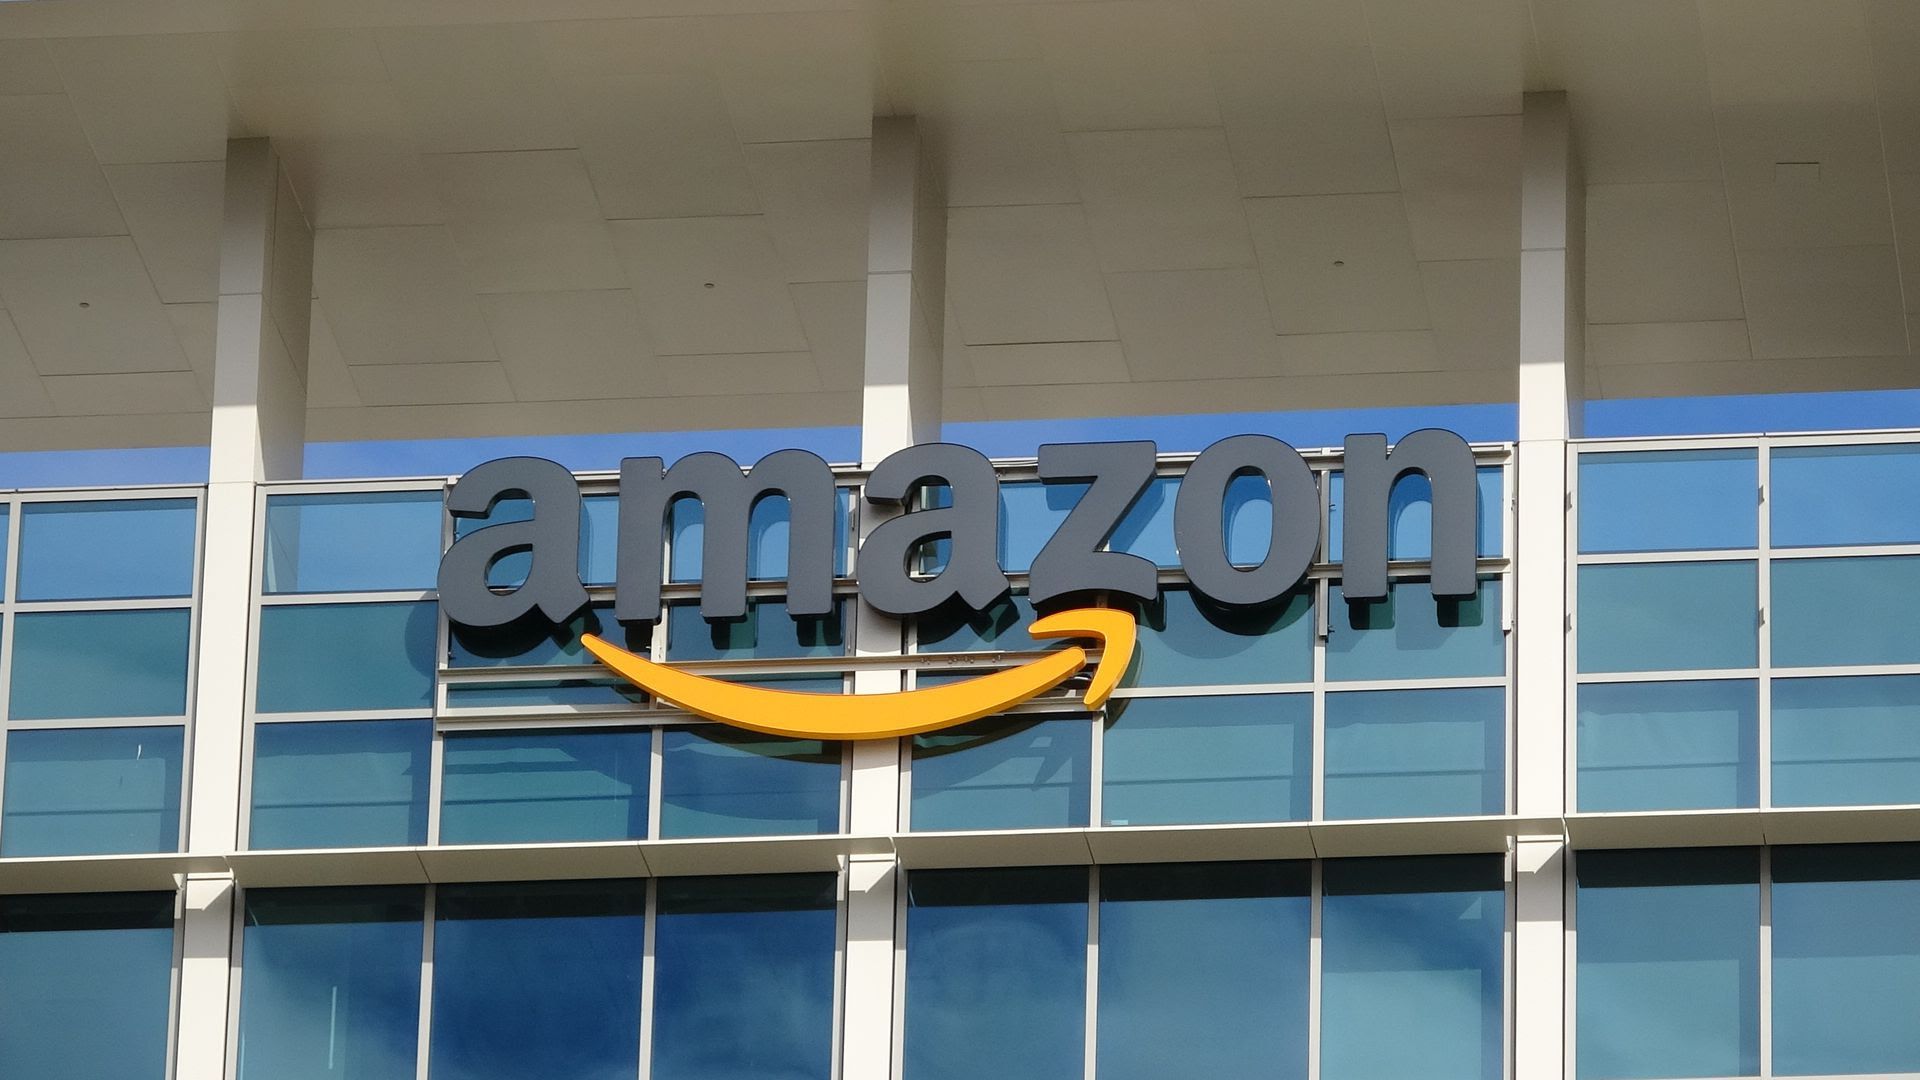 Image of the Amazon logo.